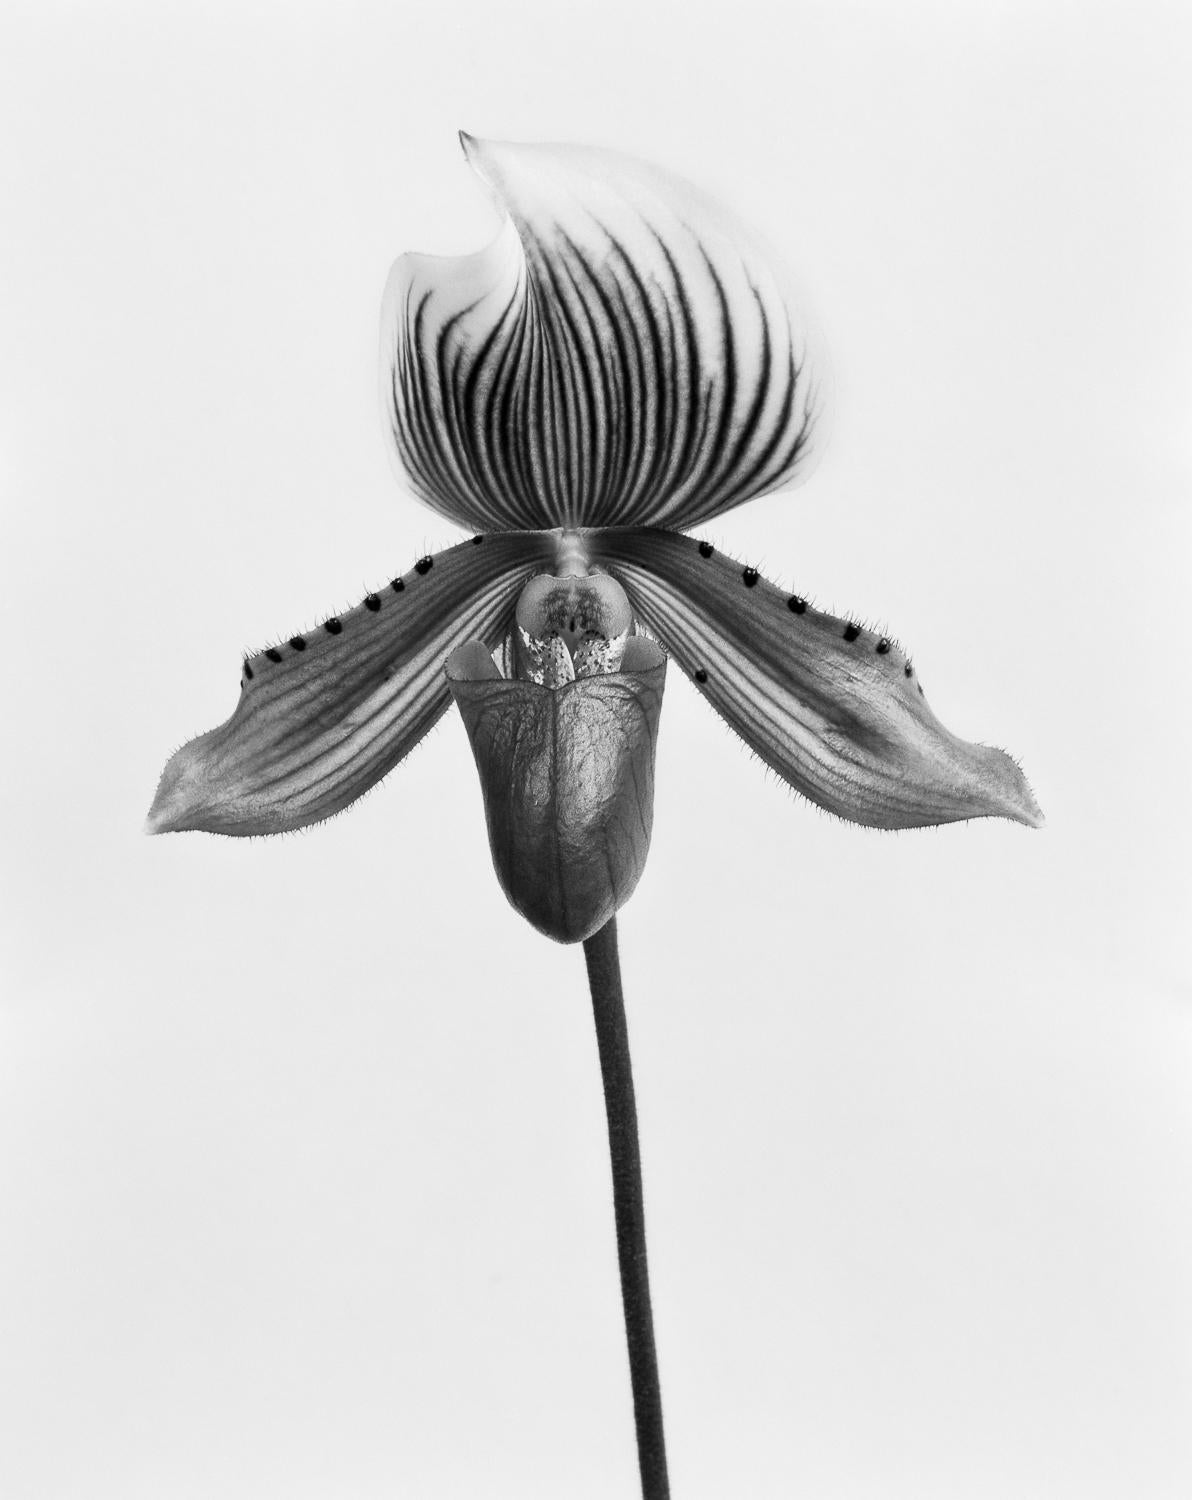 Orquídea Paphiopedilum Callosum, Impressions pigmentaires